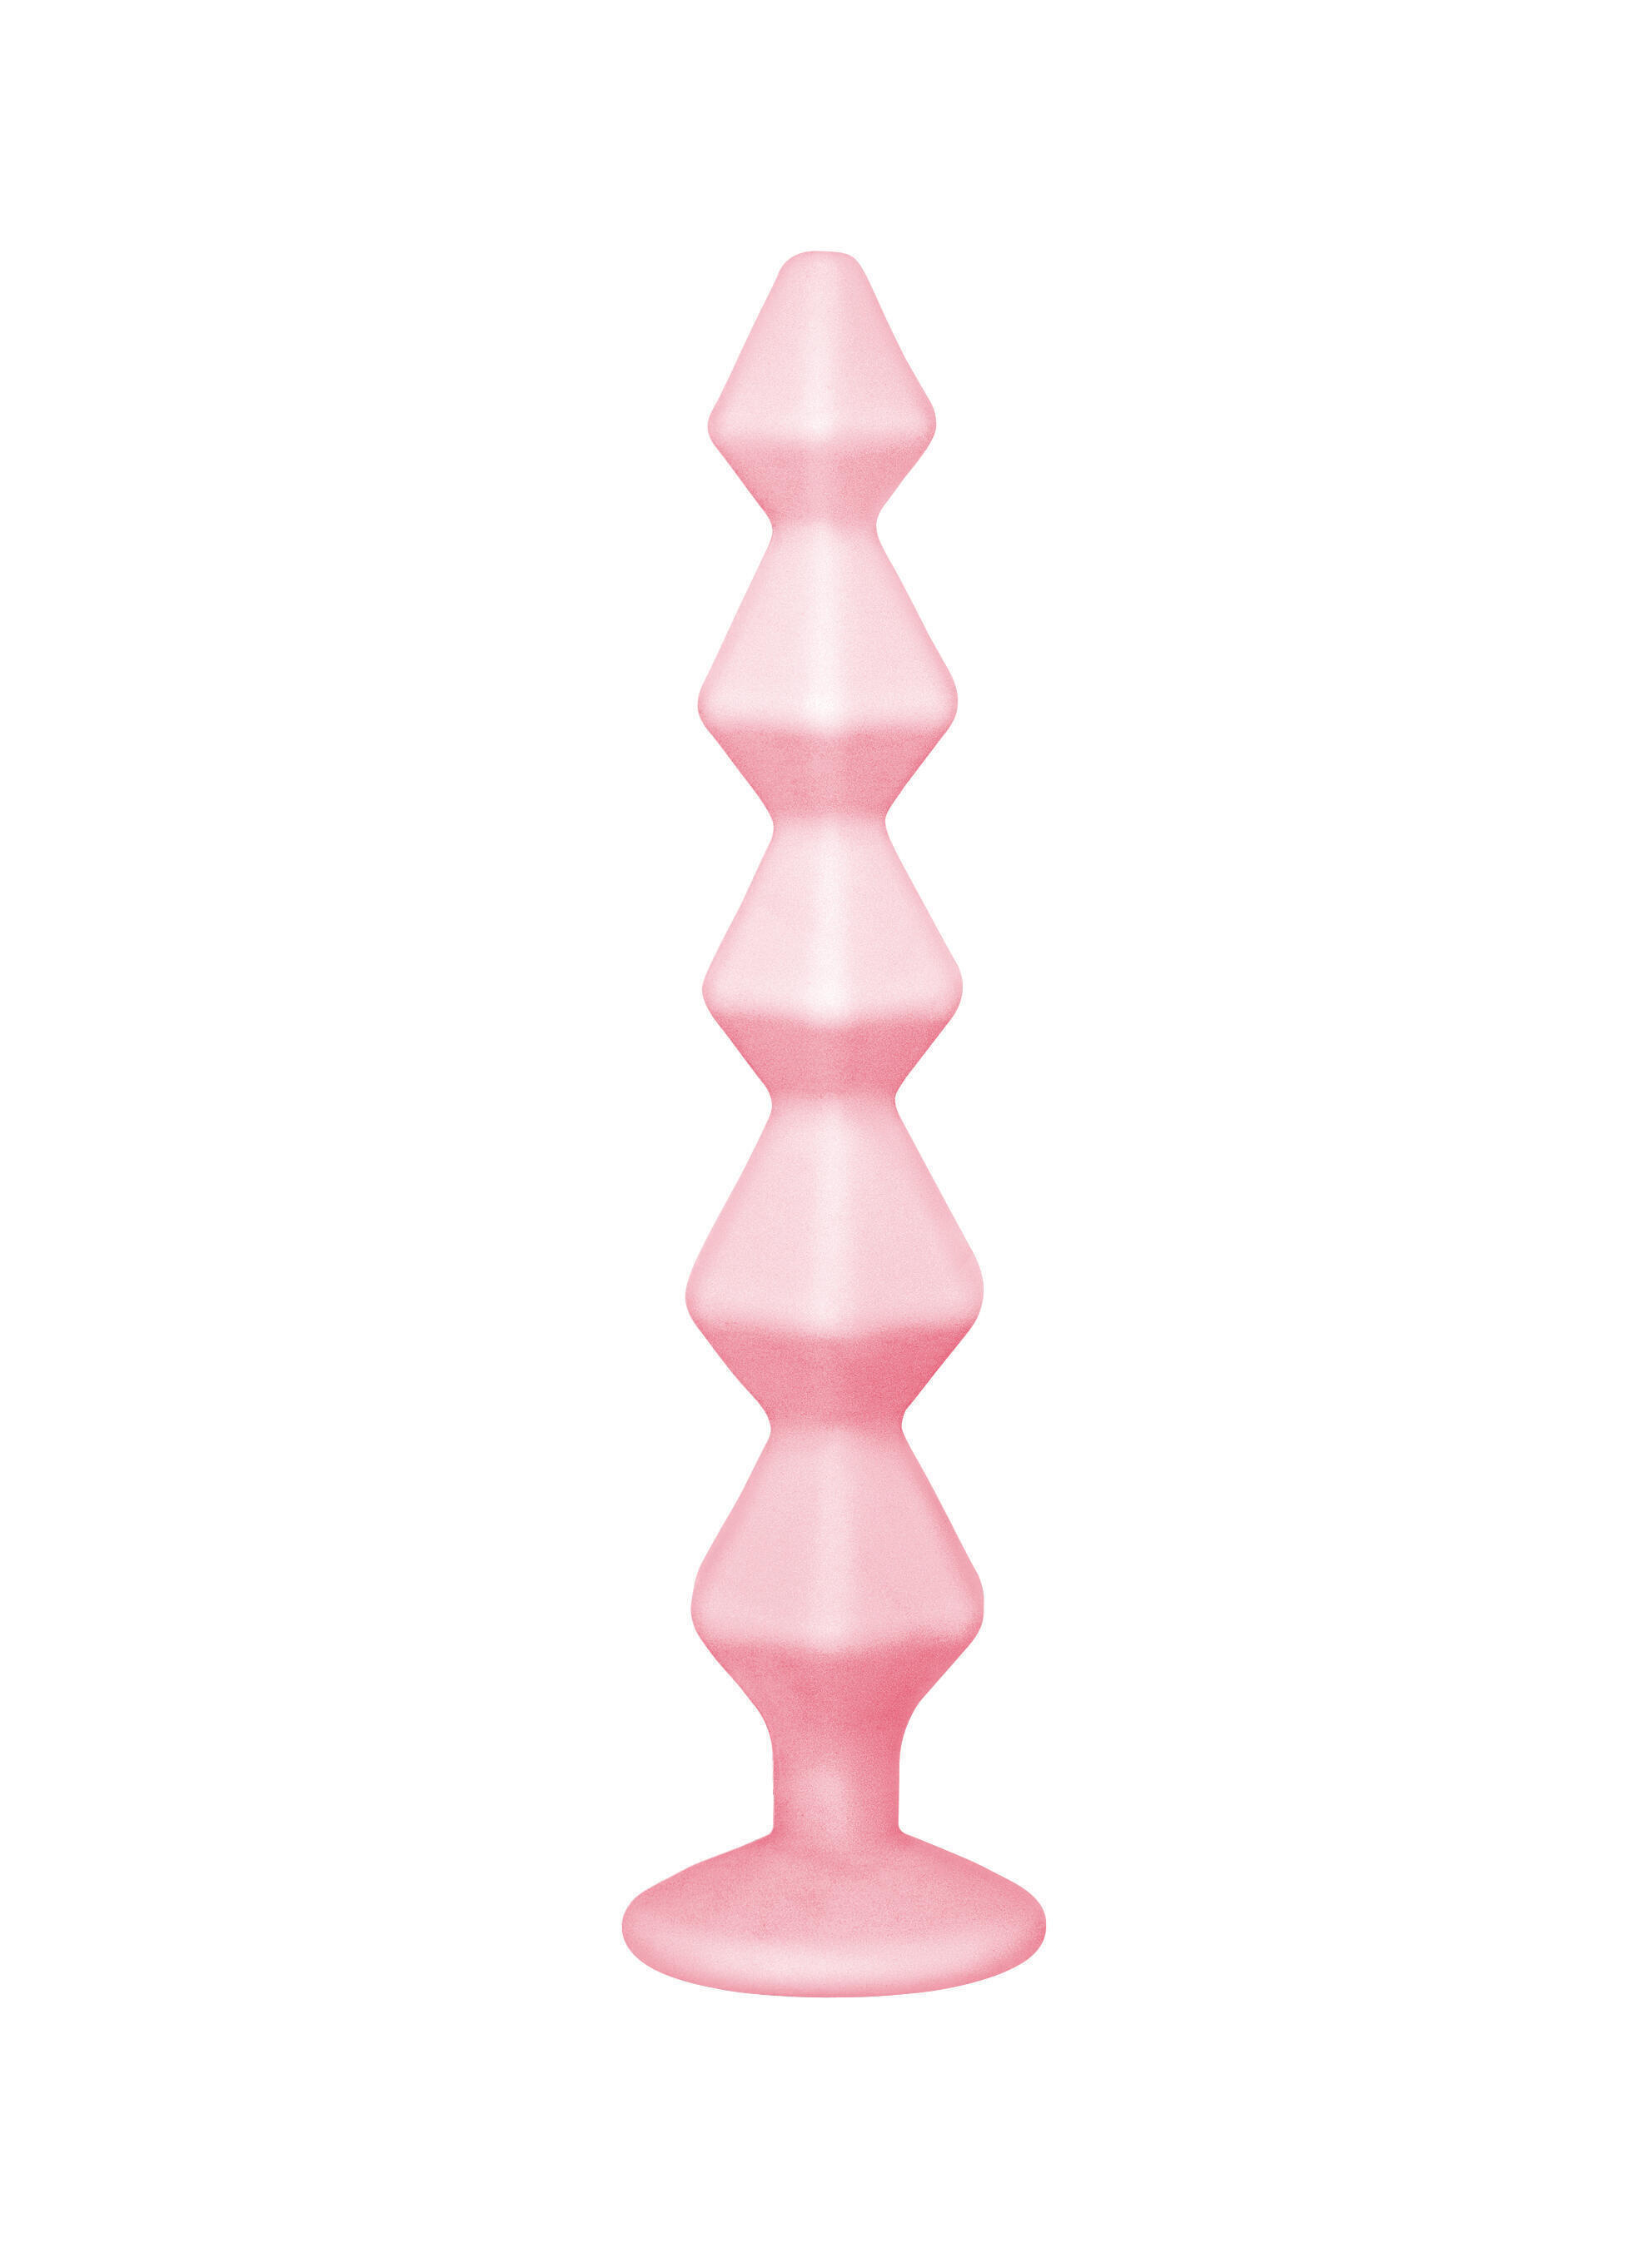 Анальная цепочка с кристаллом Lola Toys Emotions Buddy, розовая с бесцветным кристаллом